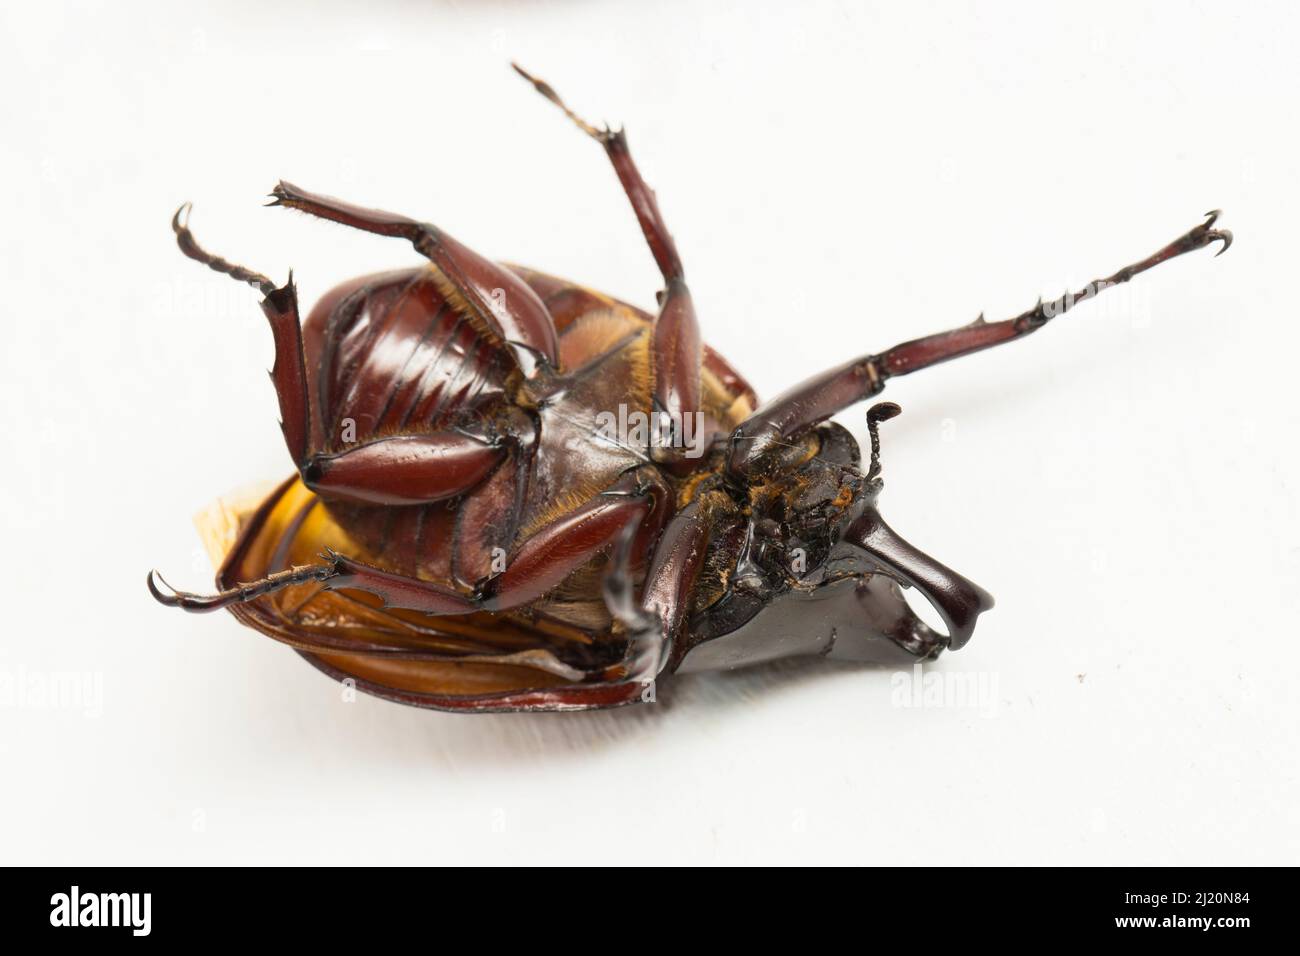 rhinoceros beetles Xylotrupes australicus isolated on white background Stock Photo